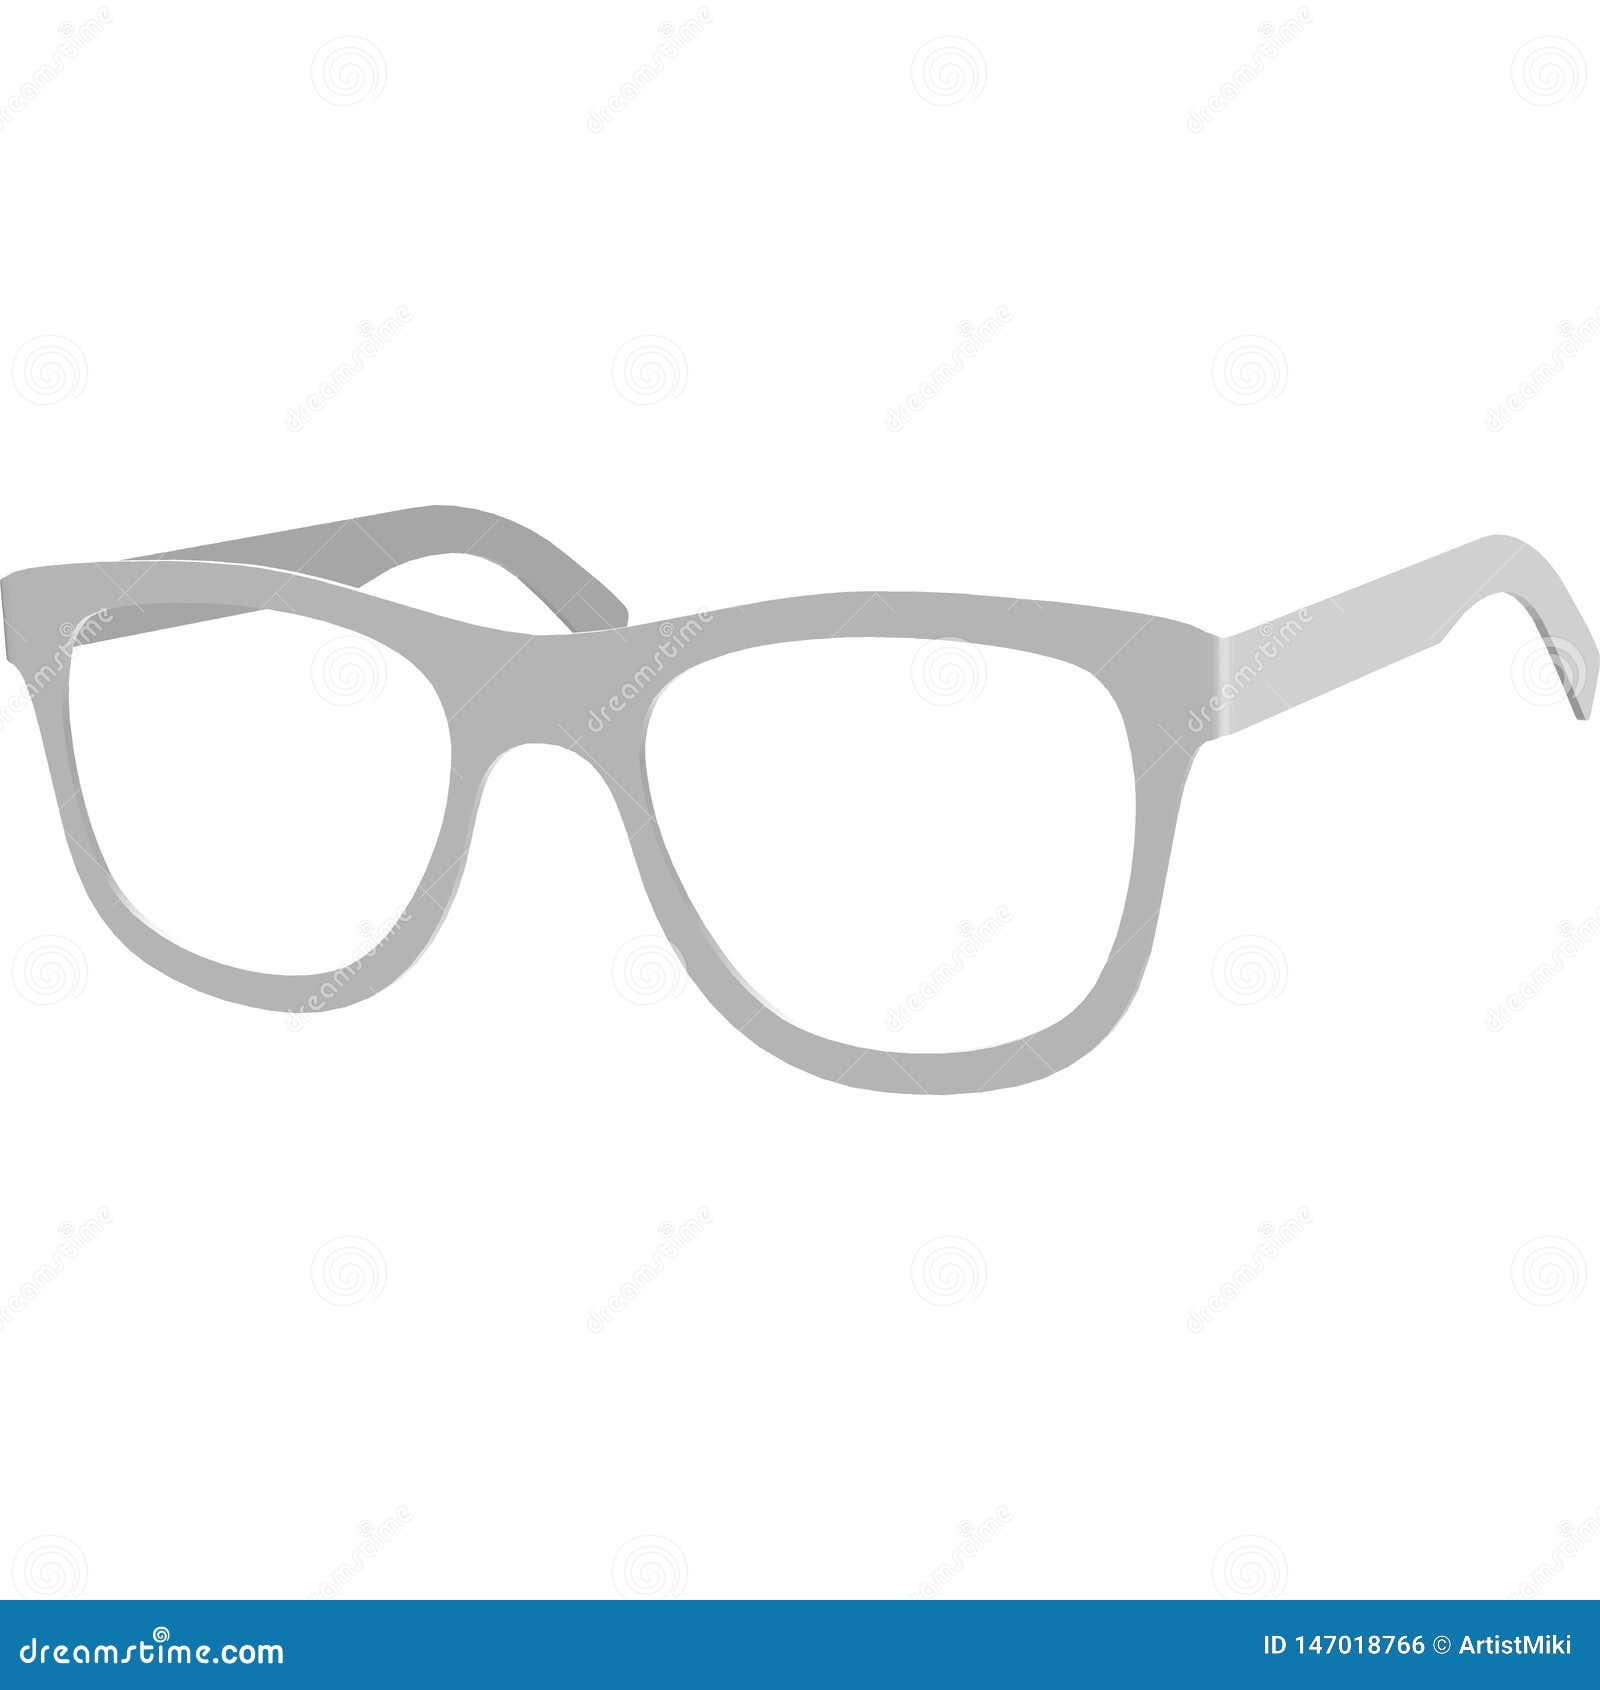 Download Sunglasses Frame Mock Up, Glasses Realistic Illustration ...